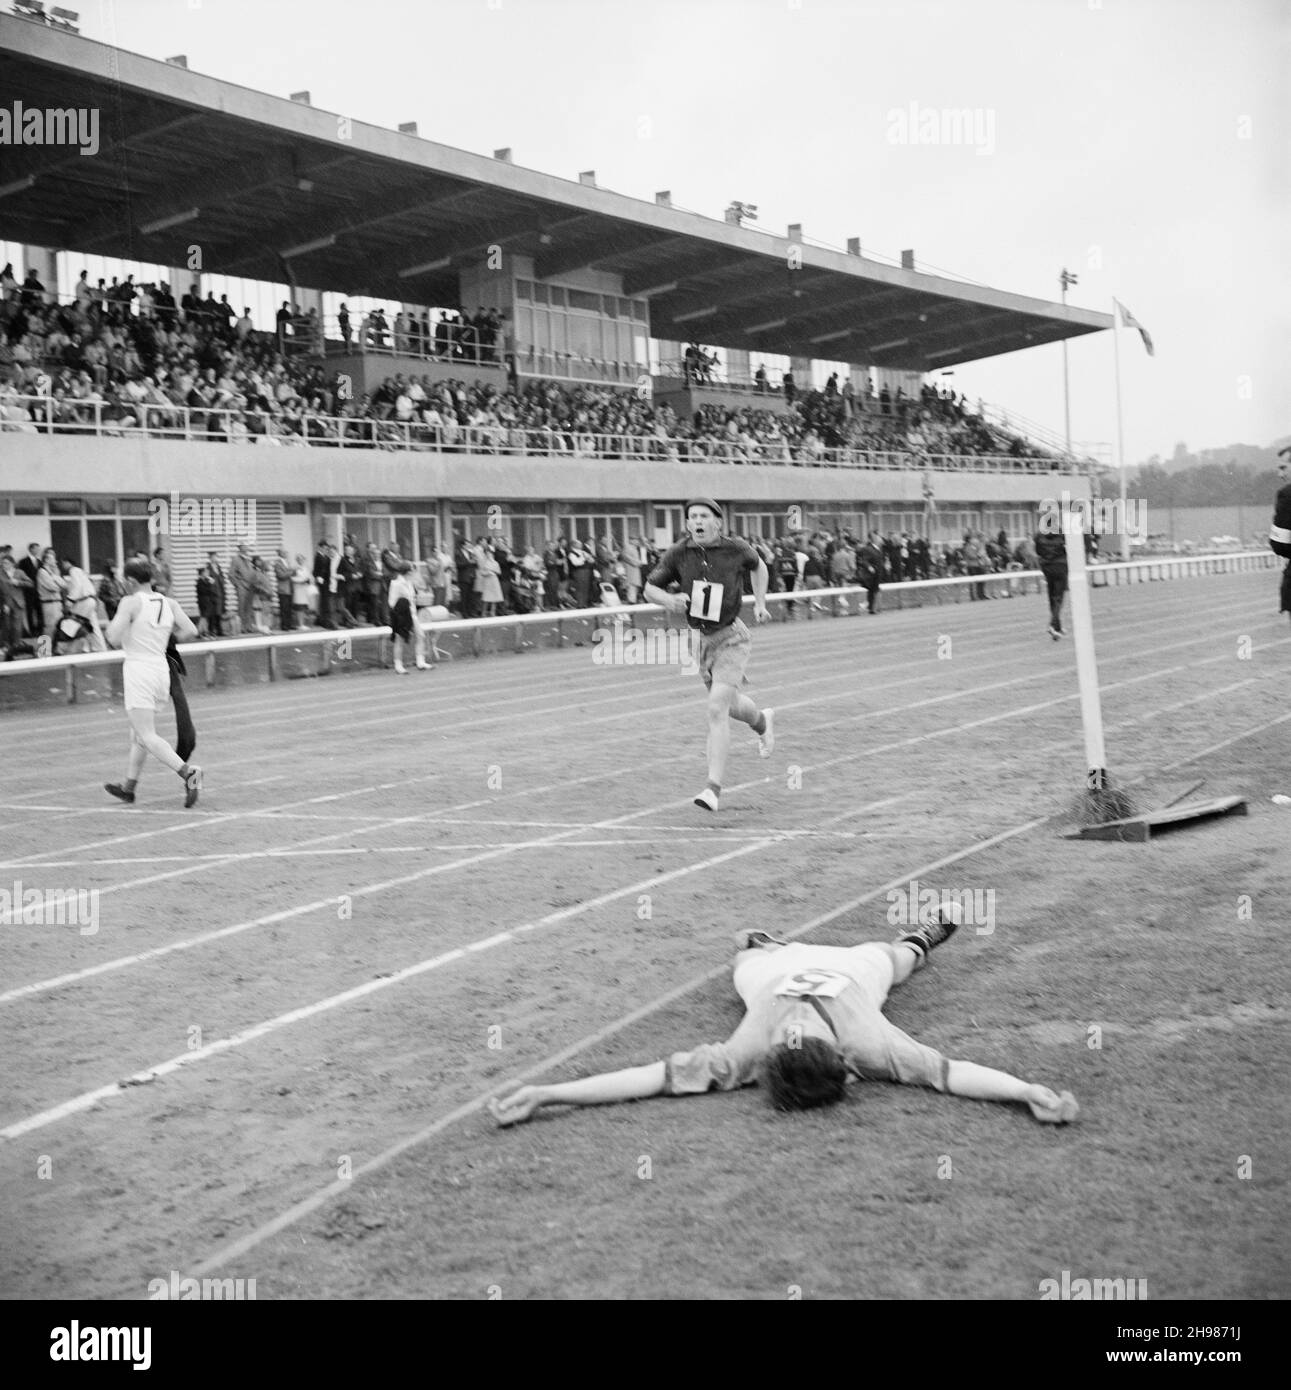 Copthall Stadium, Hendon, Barnet, Londra, 25/06/1966. Un concorrente è crollato sul terreno dopo aver terminato una gara che si tiene durante l'annuale Laing Sports Day al Copthall Stadium. Nel 1966, il 25 giugno si è tenuta la Giornata annuale dello Sport dei dipendenti di Laing al Copthall Stadium di Hendon. Era la prima volta che l'evento si teneva lì, avendo precedentemente avuto luogo il Laing Sports Ground a Elstree. Una serie di eventi ha incluso l'atletica e una competizione calcistica, e i concorrenti hanno viaggiato dagli uffici e dai siti regionali dell'azienda, tra cui la Scozia e Carlisle. C'era anche una fiera, marchi Foto Stock